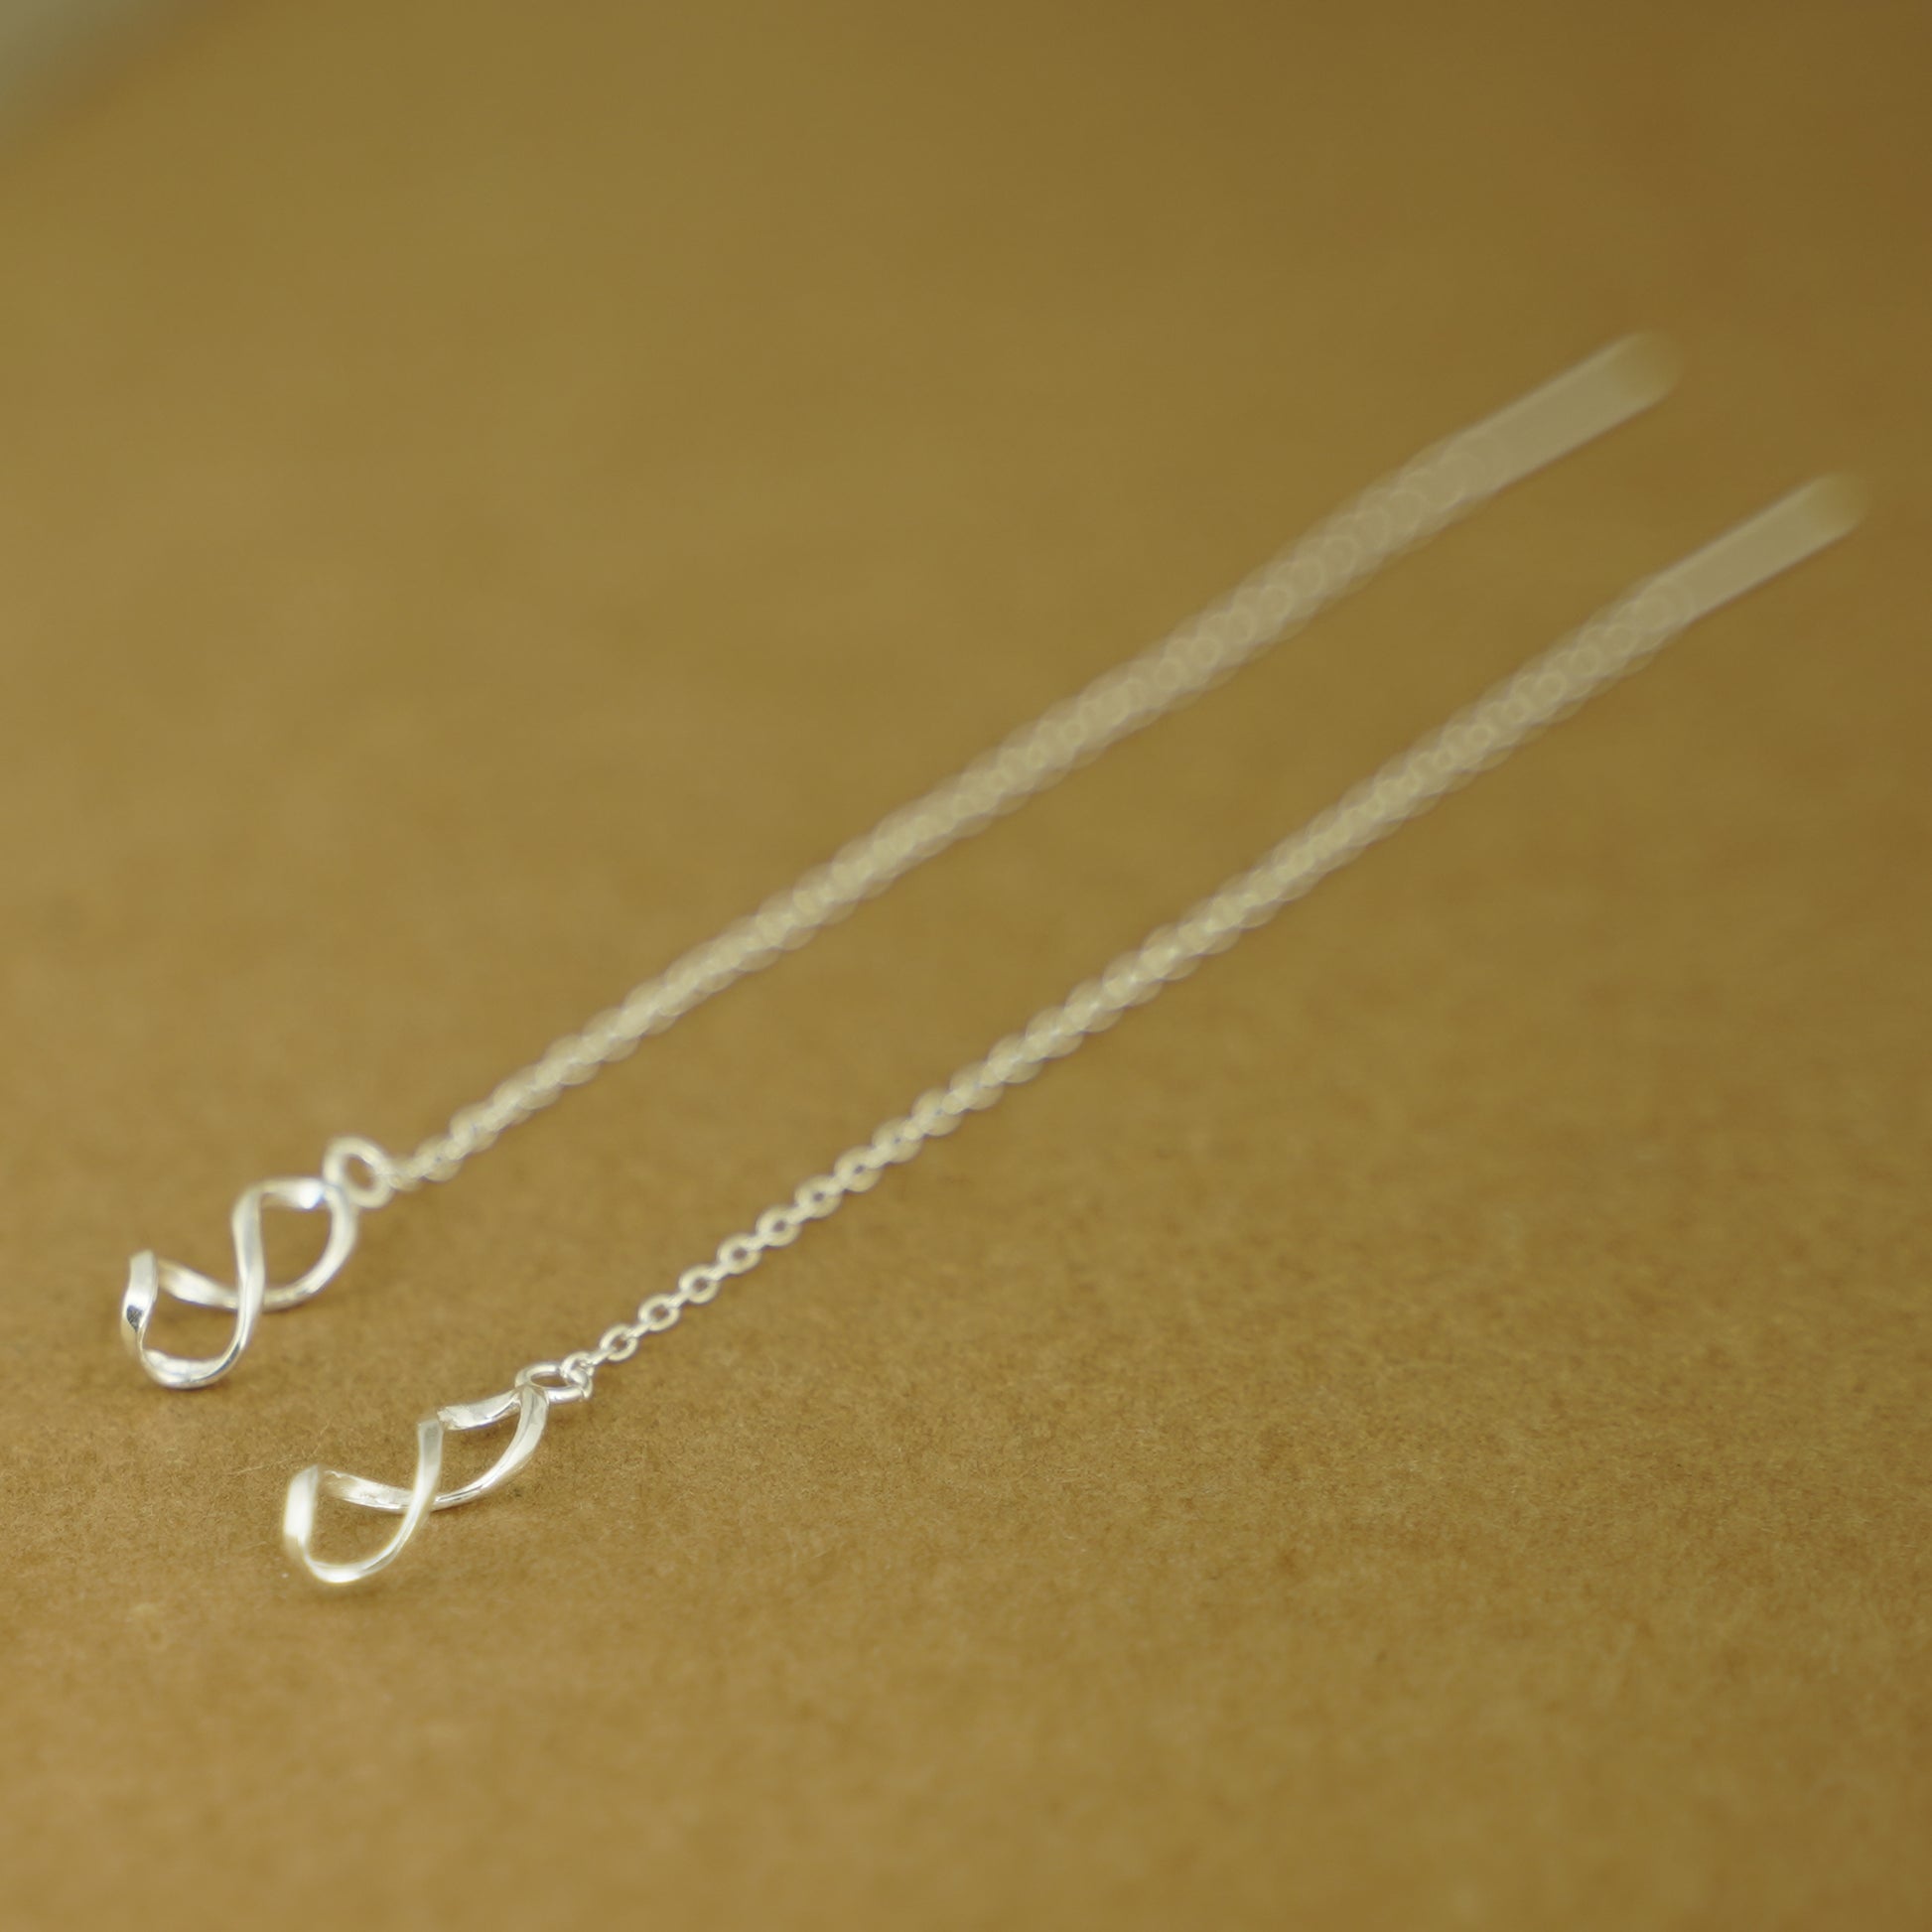 925 Sterling Silver Threader Earrings with Twisted Teardrop Spirals - sugarkittenlondon